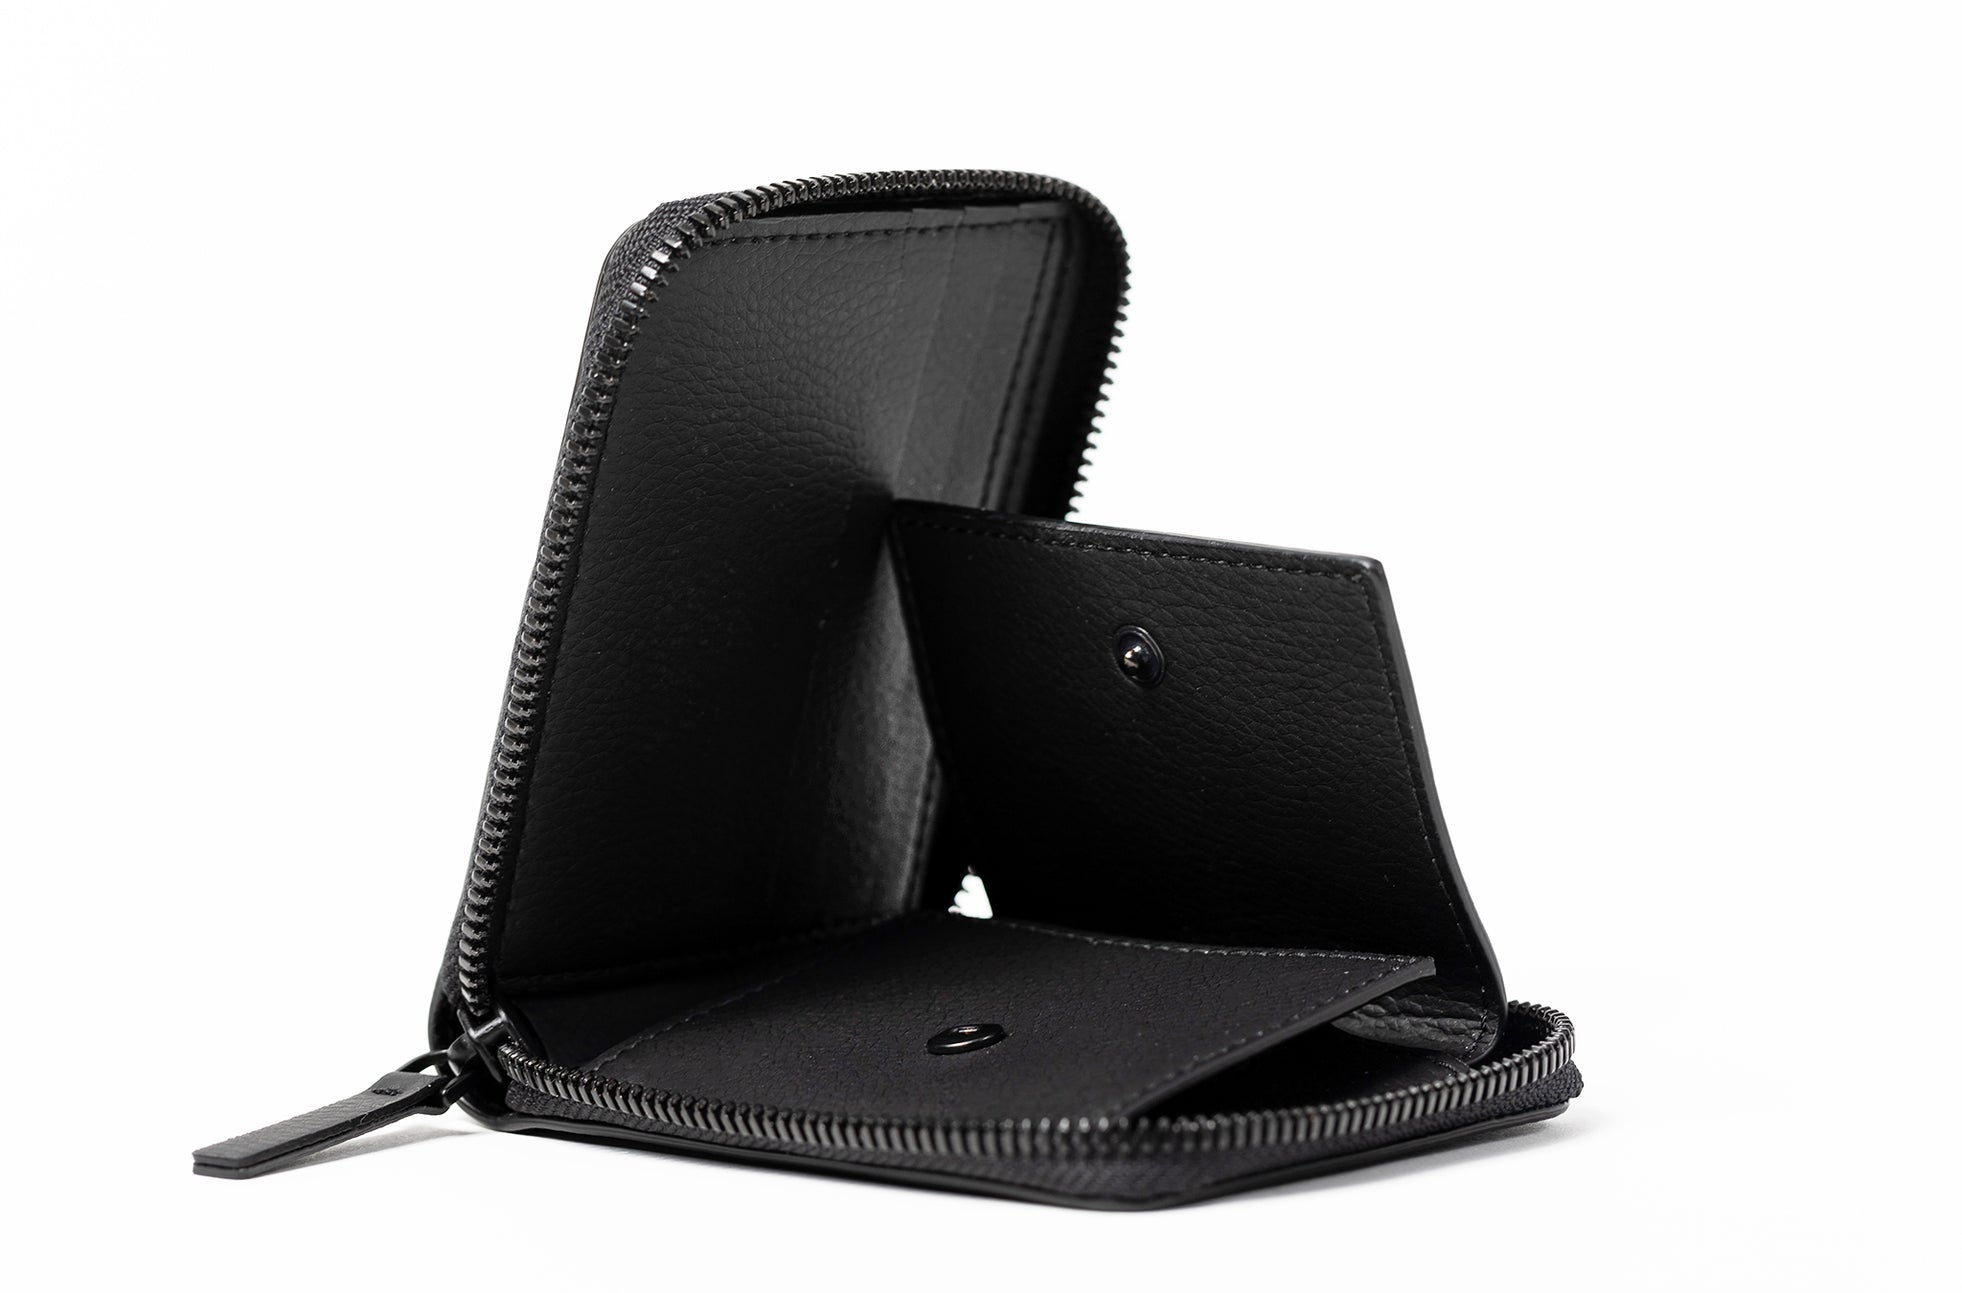 The Zip-Around Wallet in Technik-Leather in Black image 5